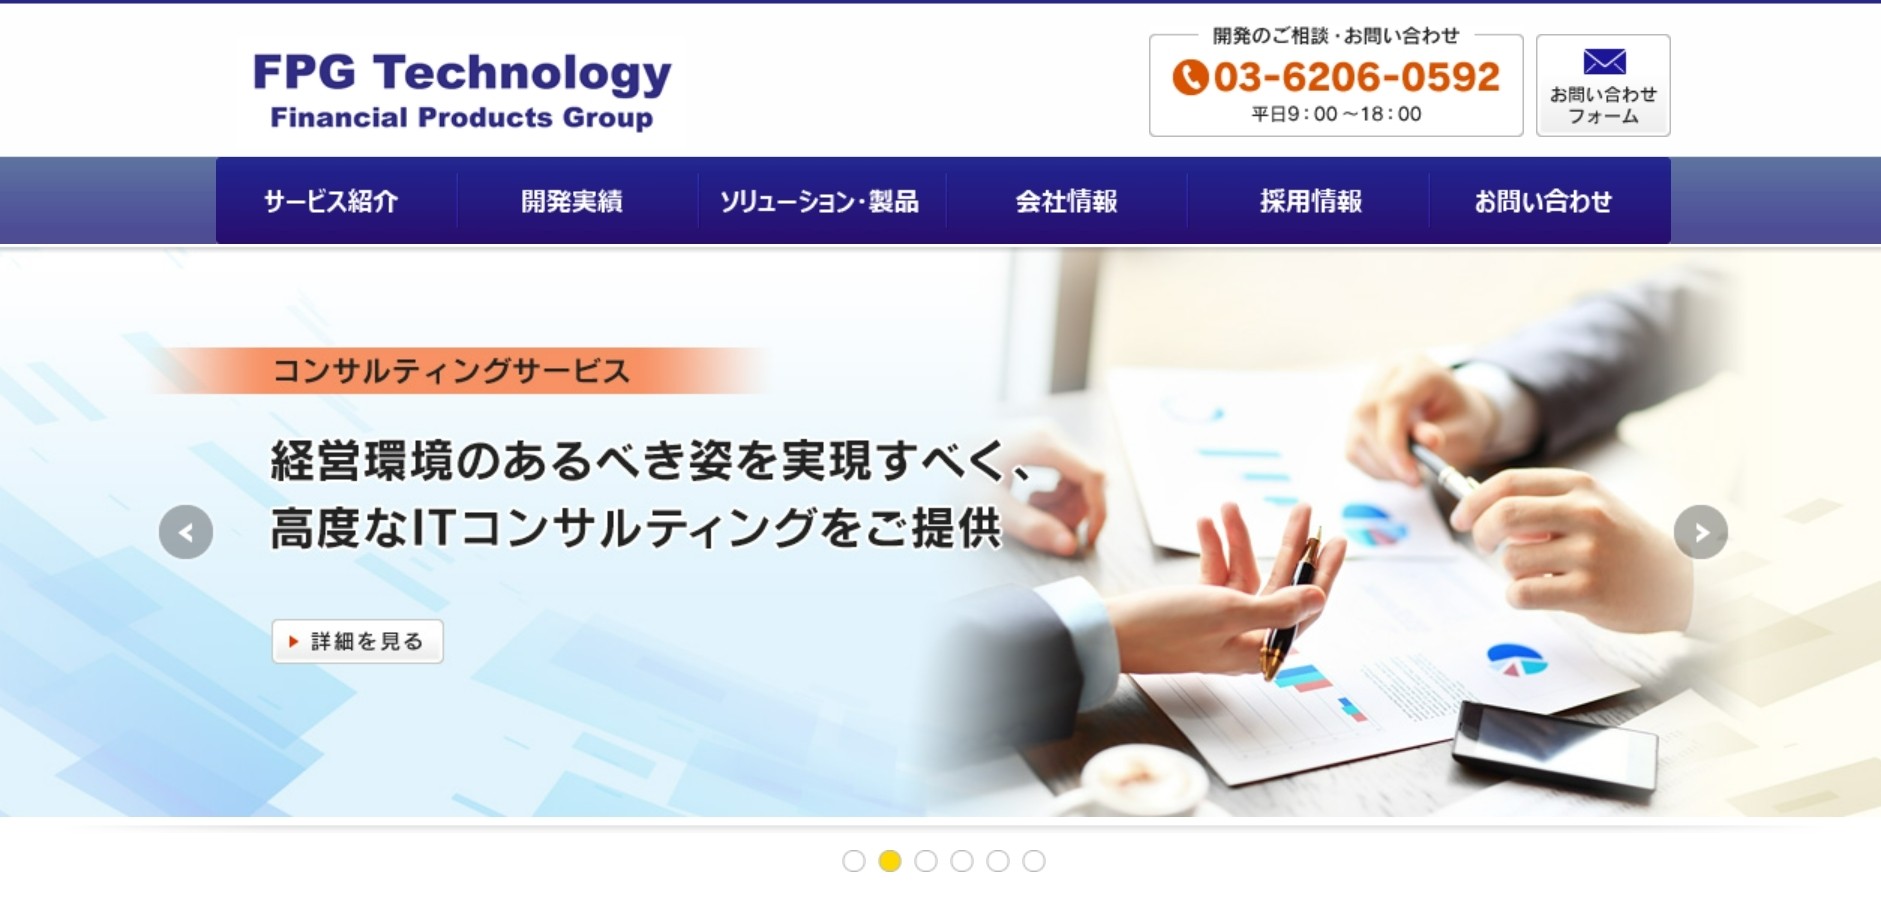 株式会社ＦＰＧテクノロジーの株式会社カタクラ・クロステクノロジー:会計ソフトサービス